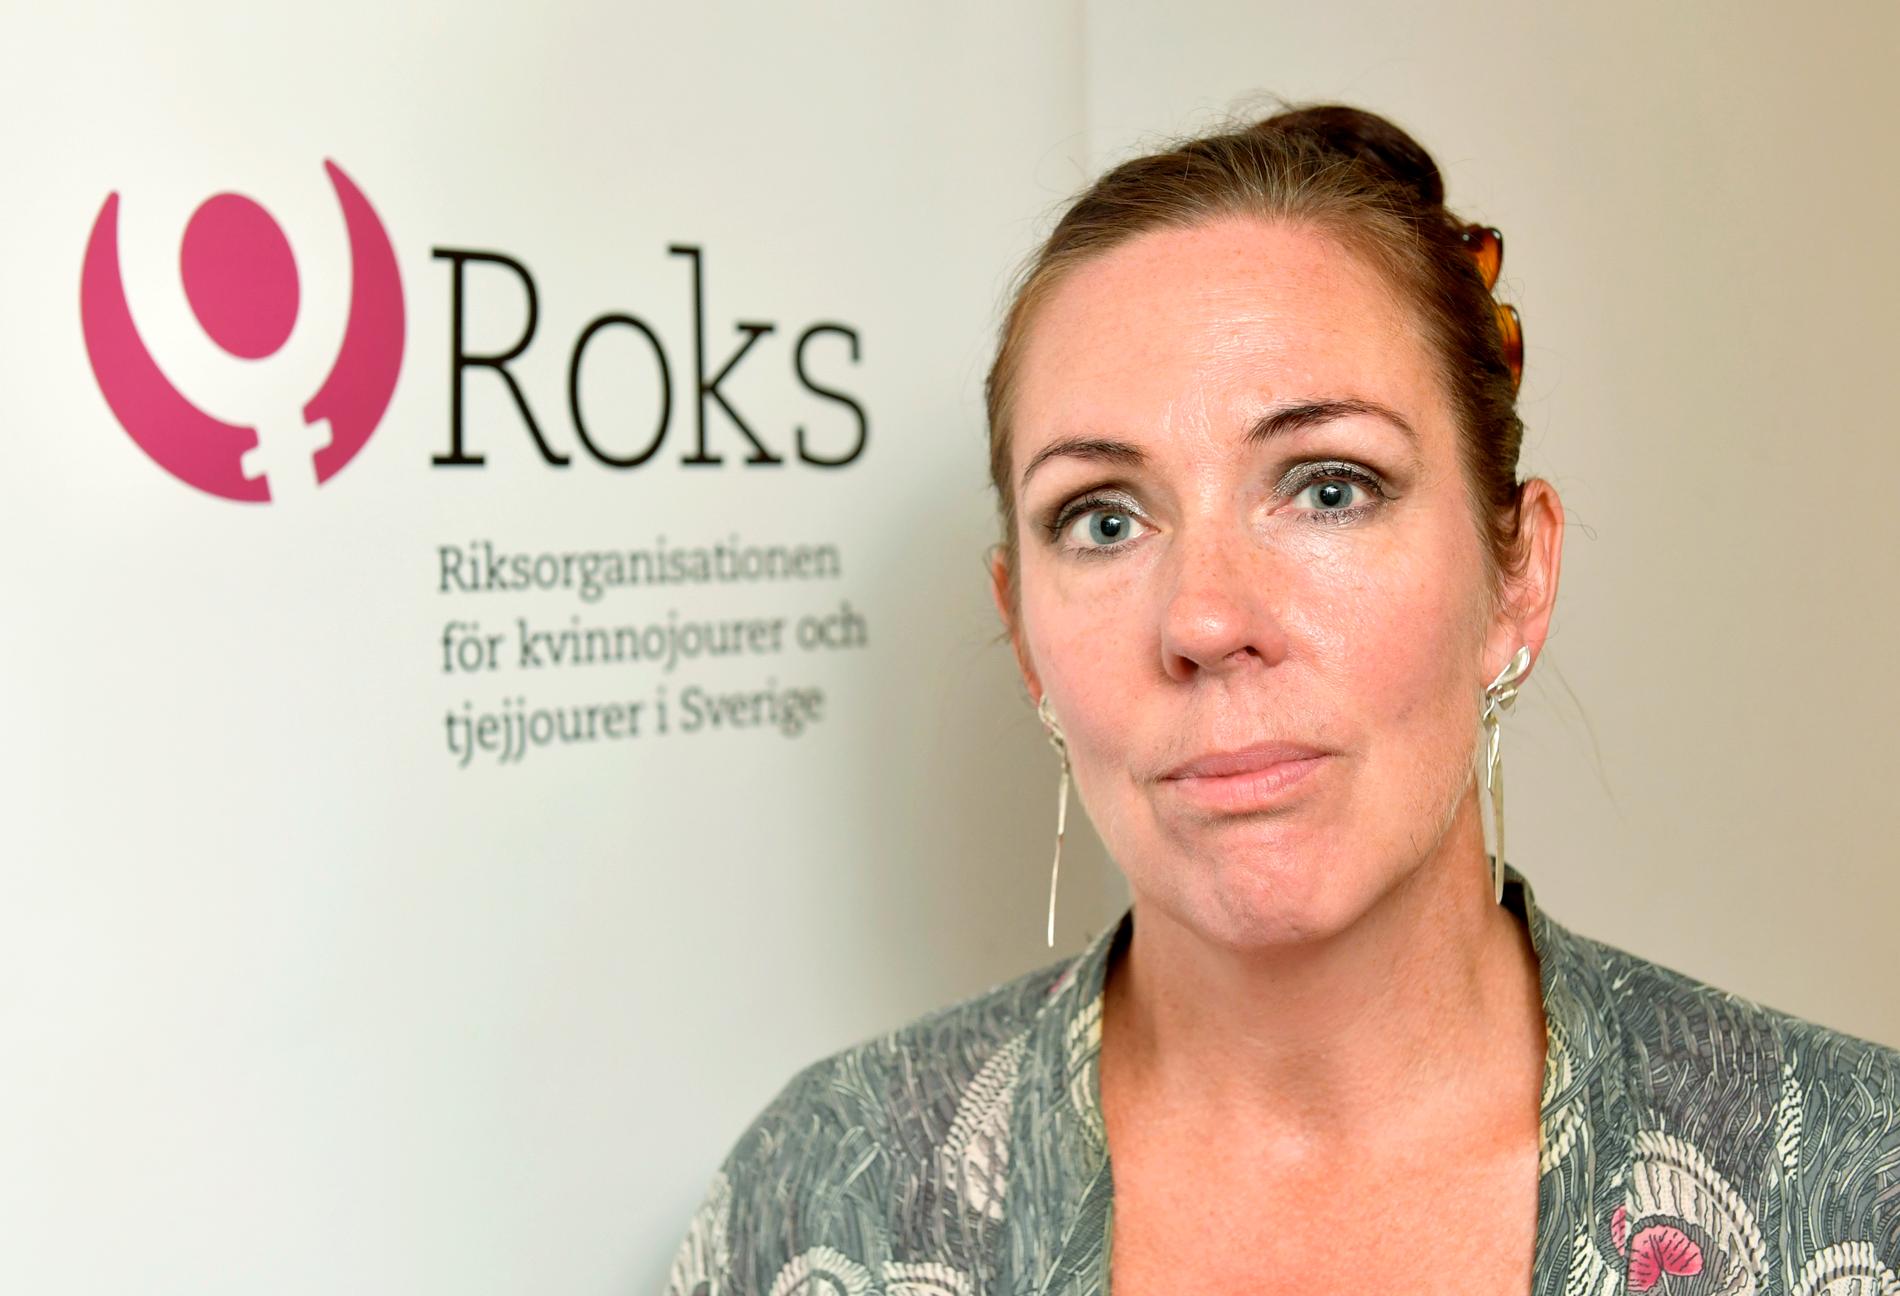 "Socionommässan är numera ett spektakel där skyddade boenden marknadsför sig", säger Jenny Westerstrand, ordförande i Roks (Riksorganisationen för kvinnojourer och tjejjourer i Sverige). Arkivbild.